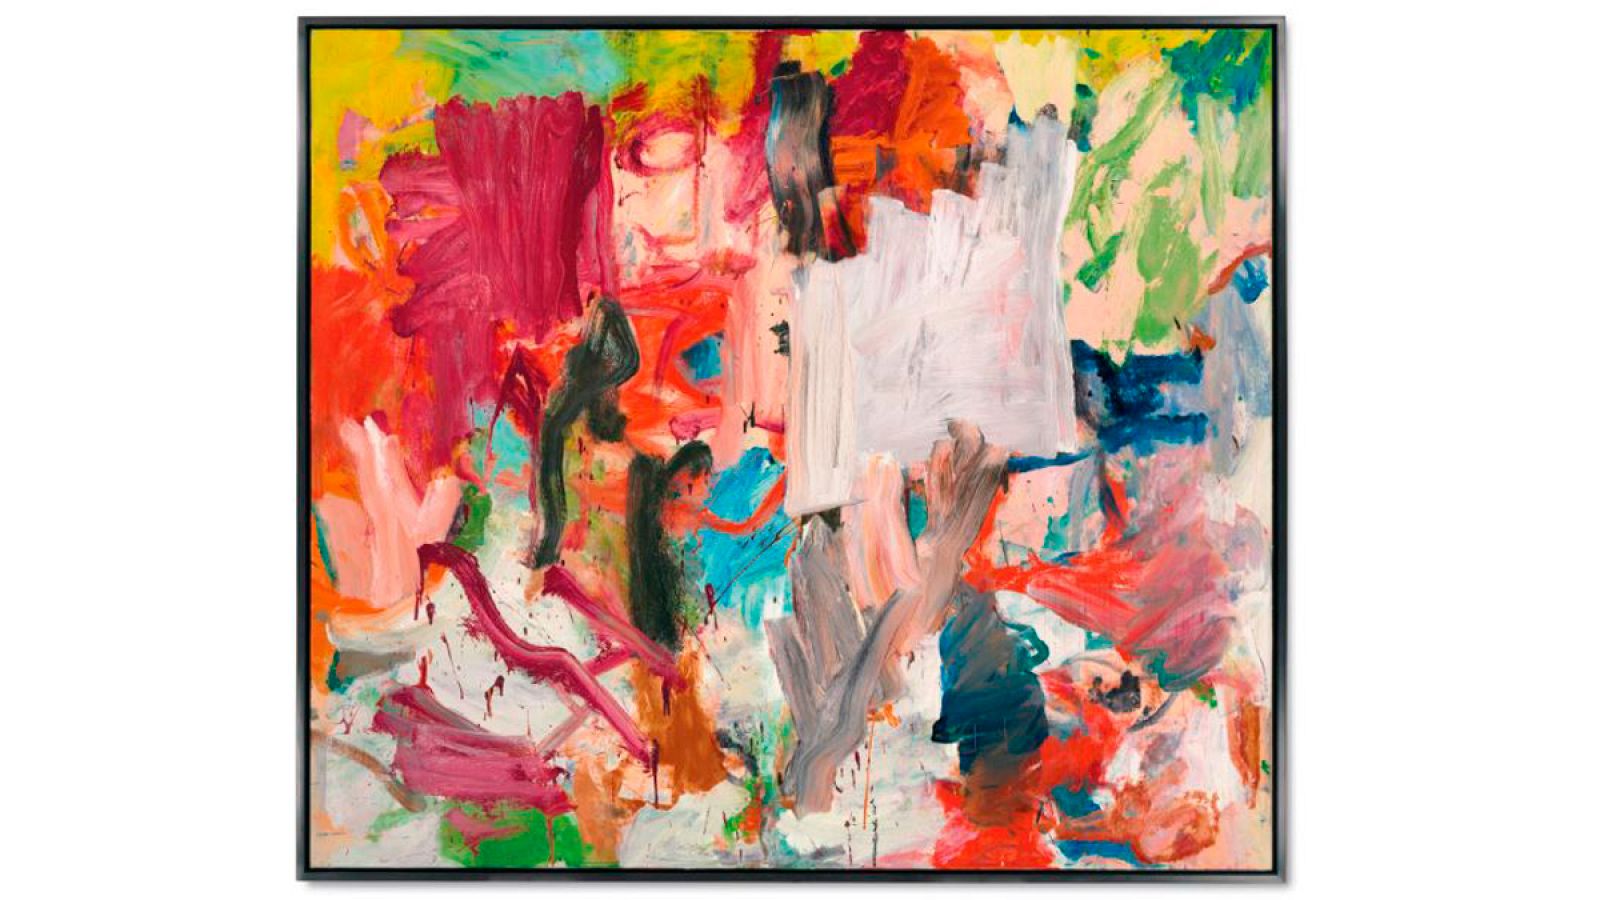 El colorista cuadro "Untitled XXV" (1977), del expresionista Willem de Kooning